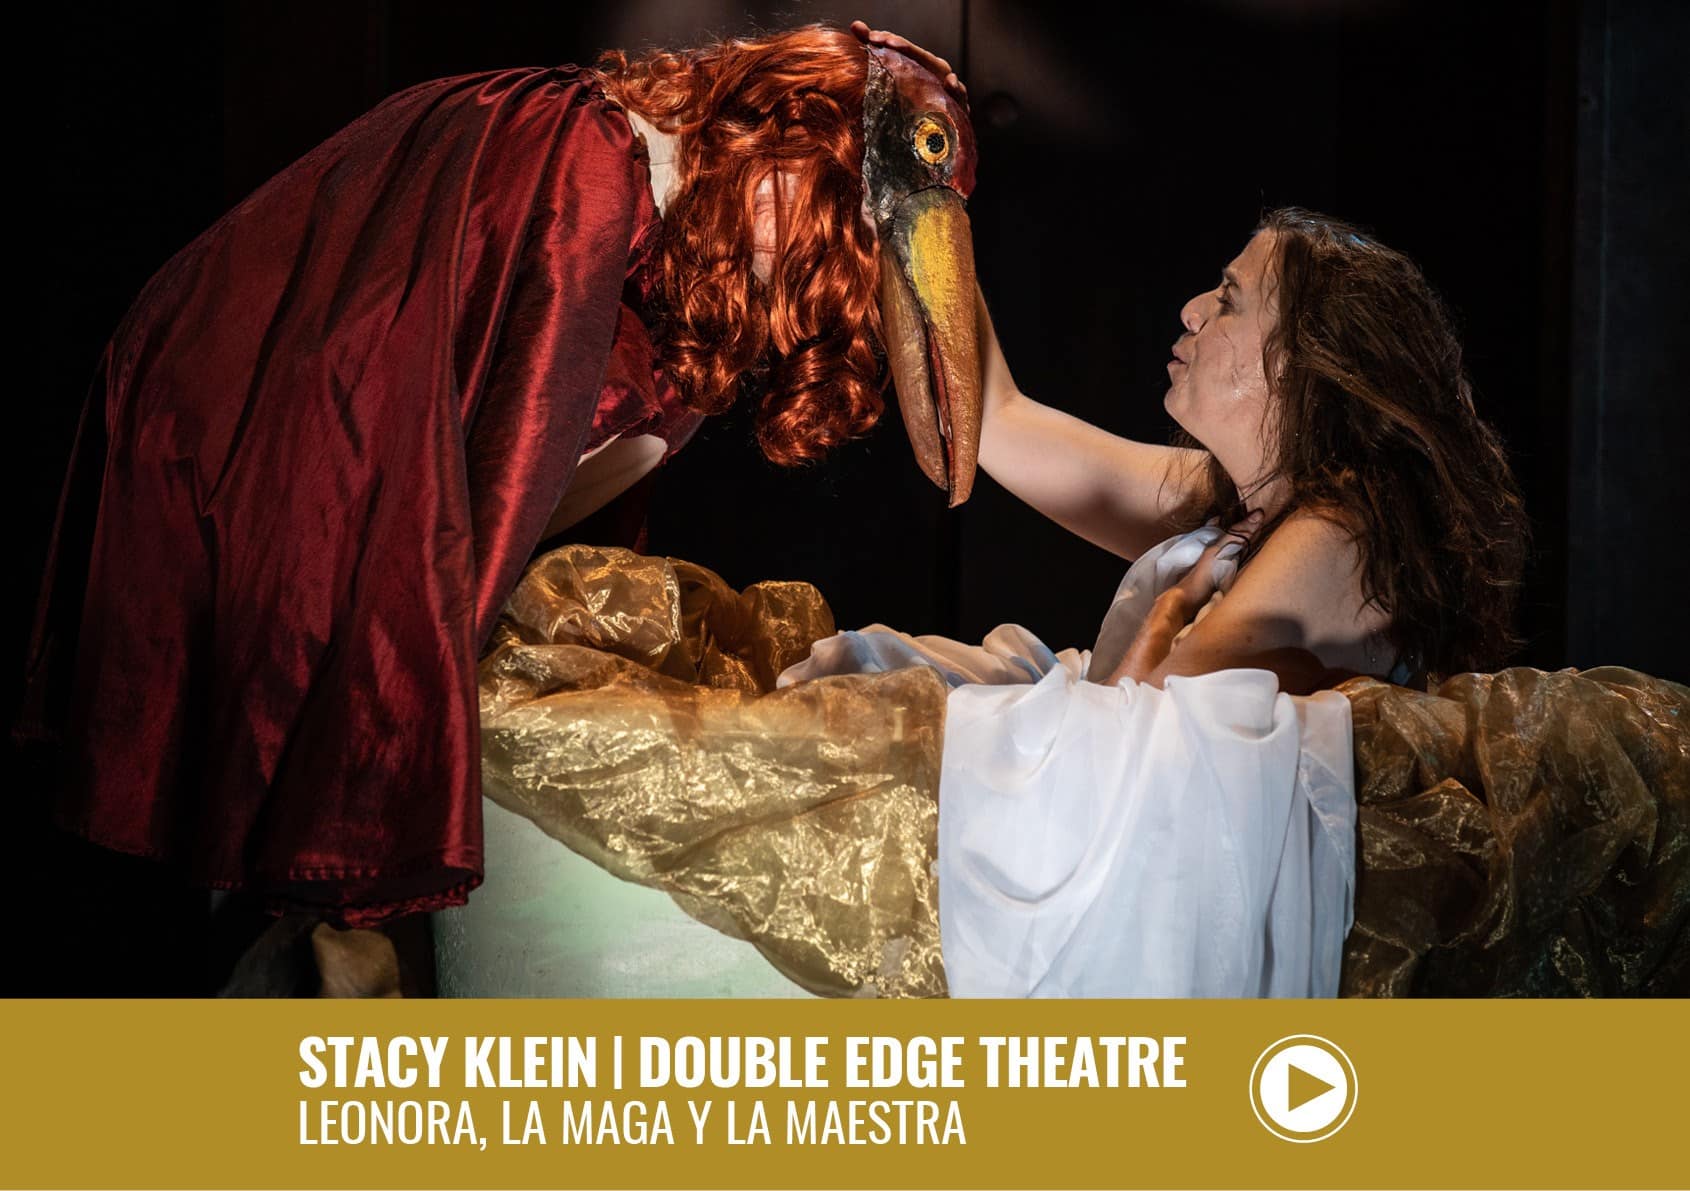 Stacy Klein Double Edge Theatre